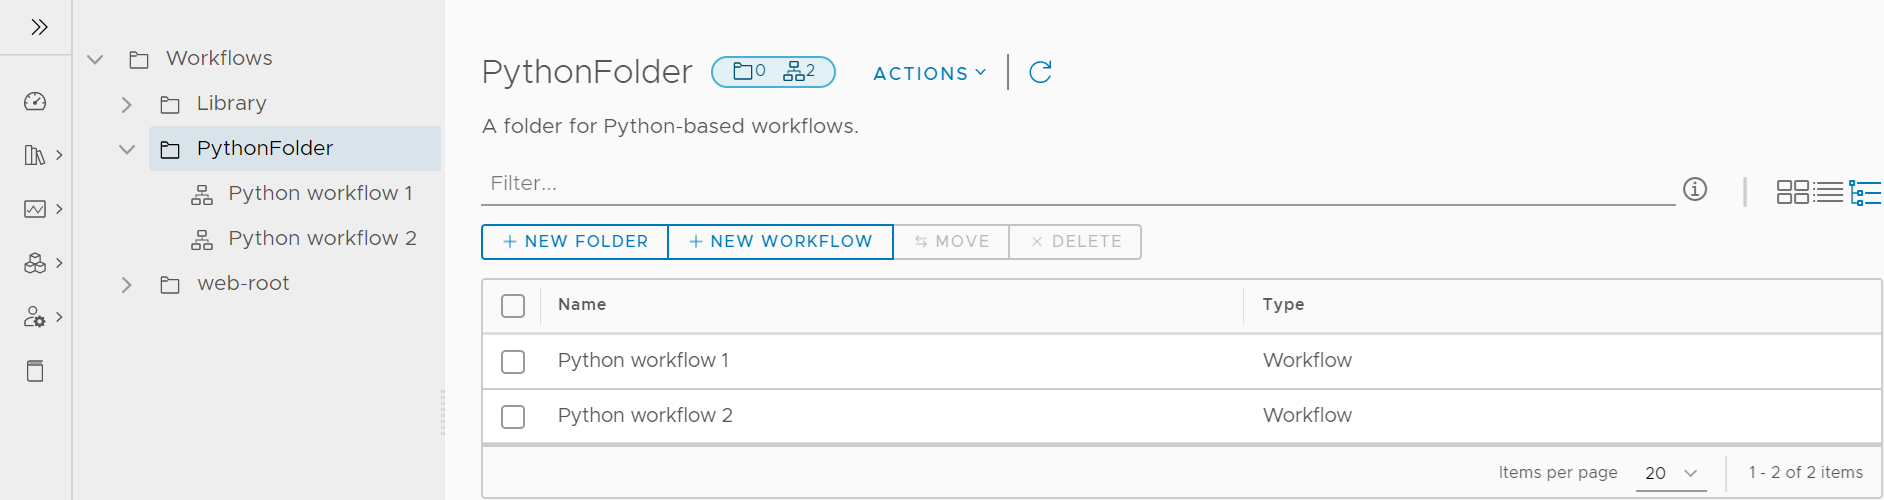 Automation Orchestrator Client visualizza la pagina Workflow nella visualizzazione albero.